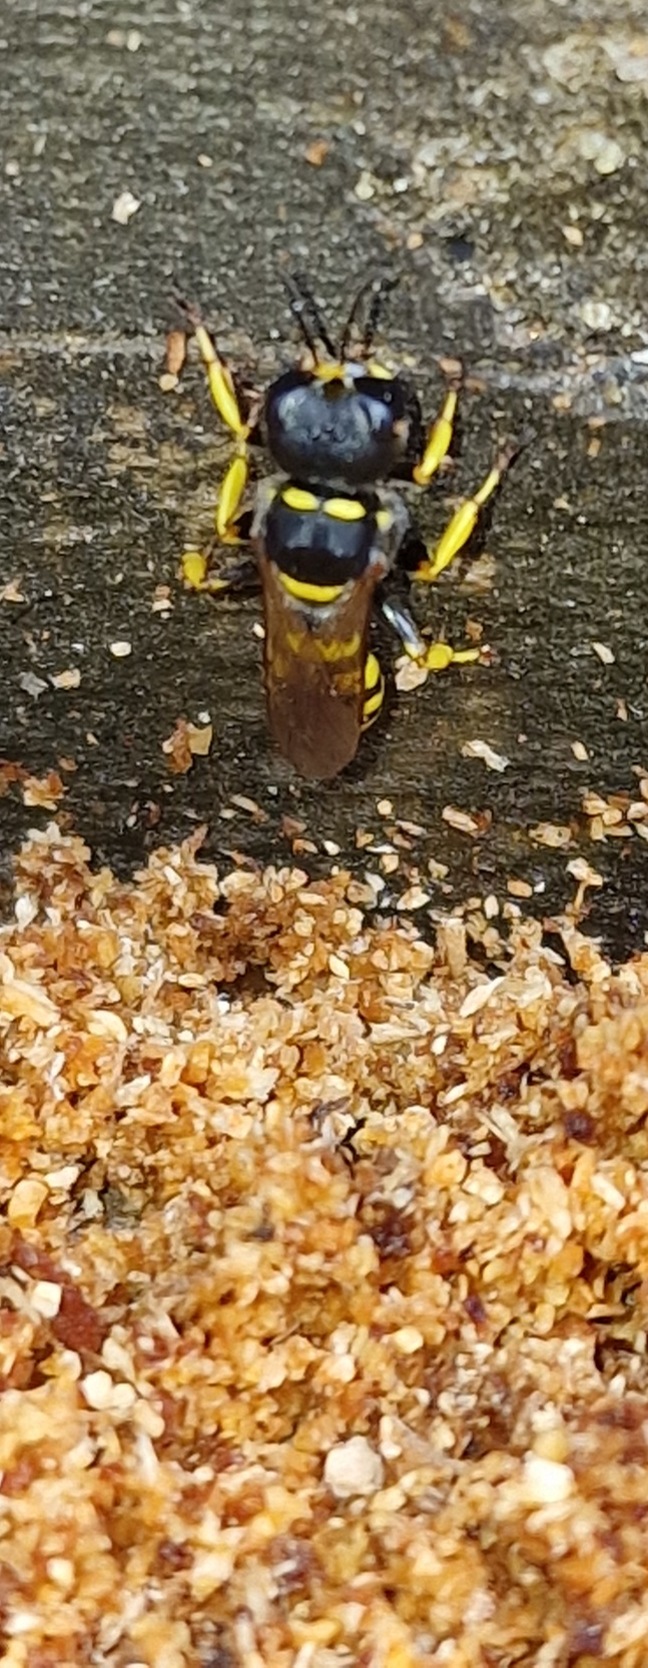 wood wasp